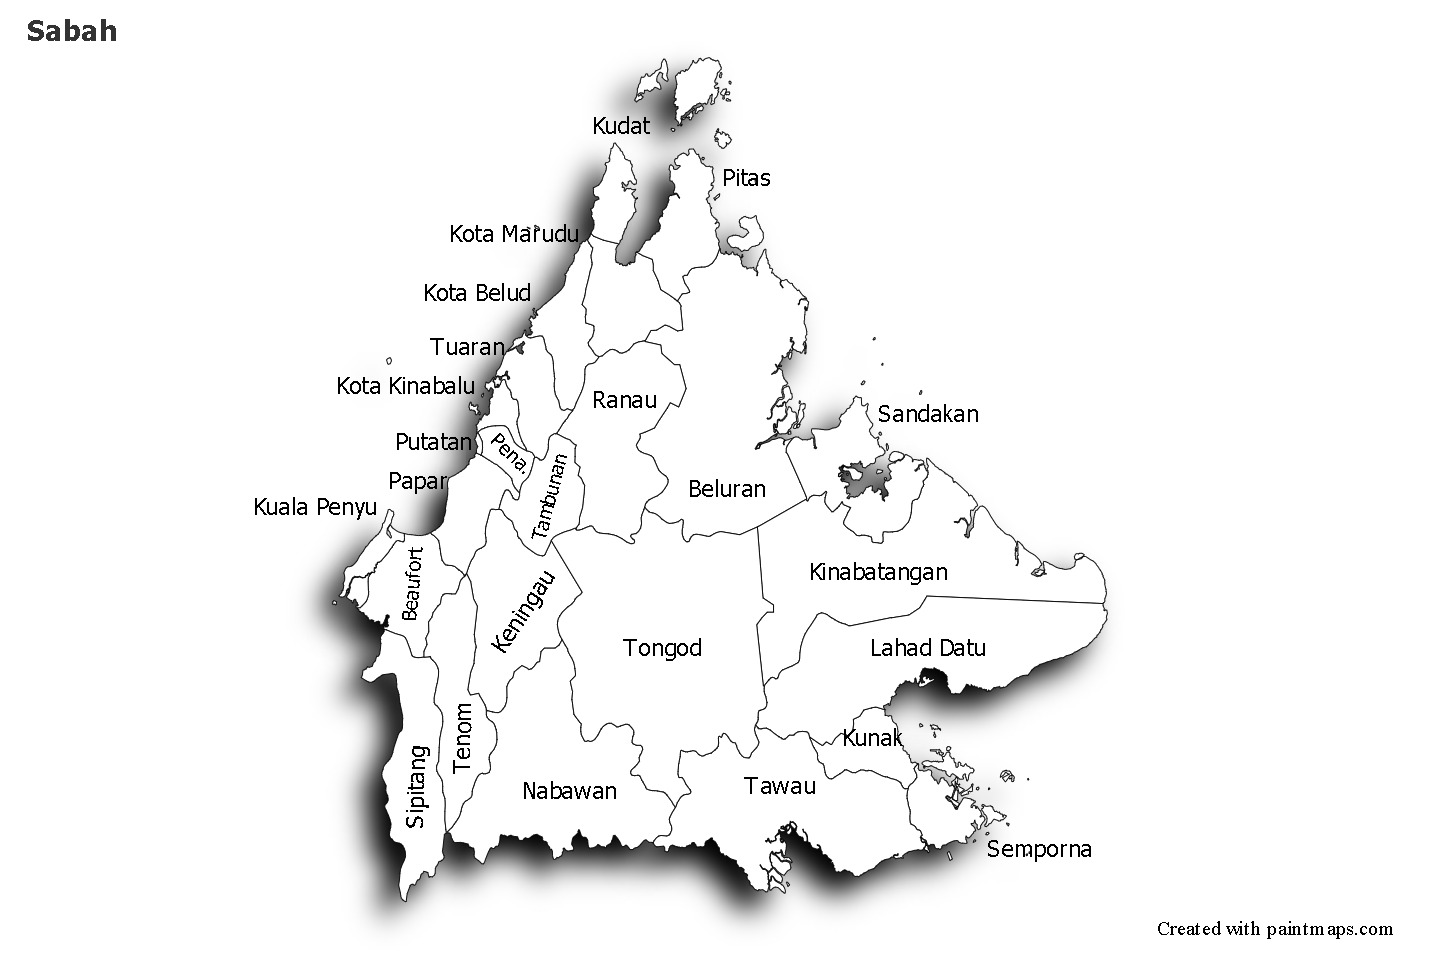 Sample Maps for Sabah